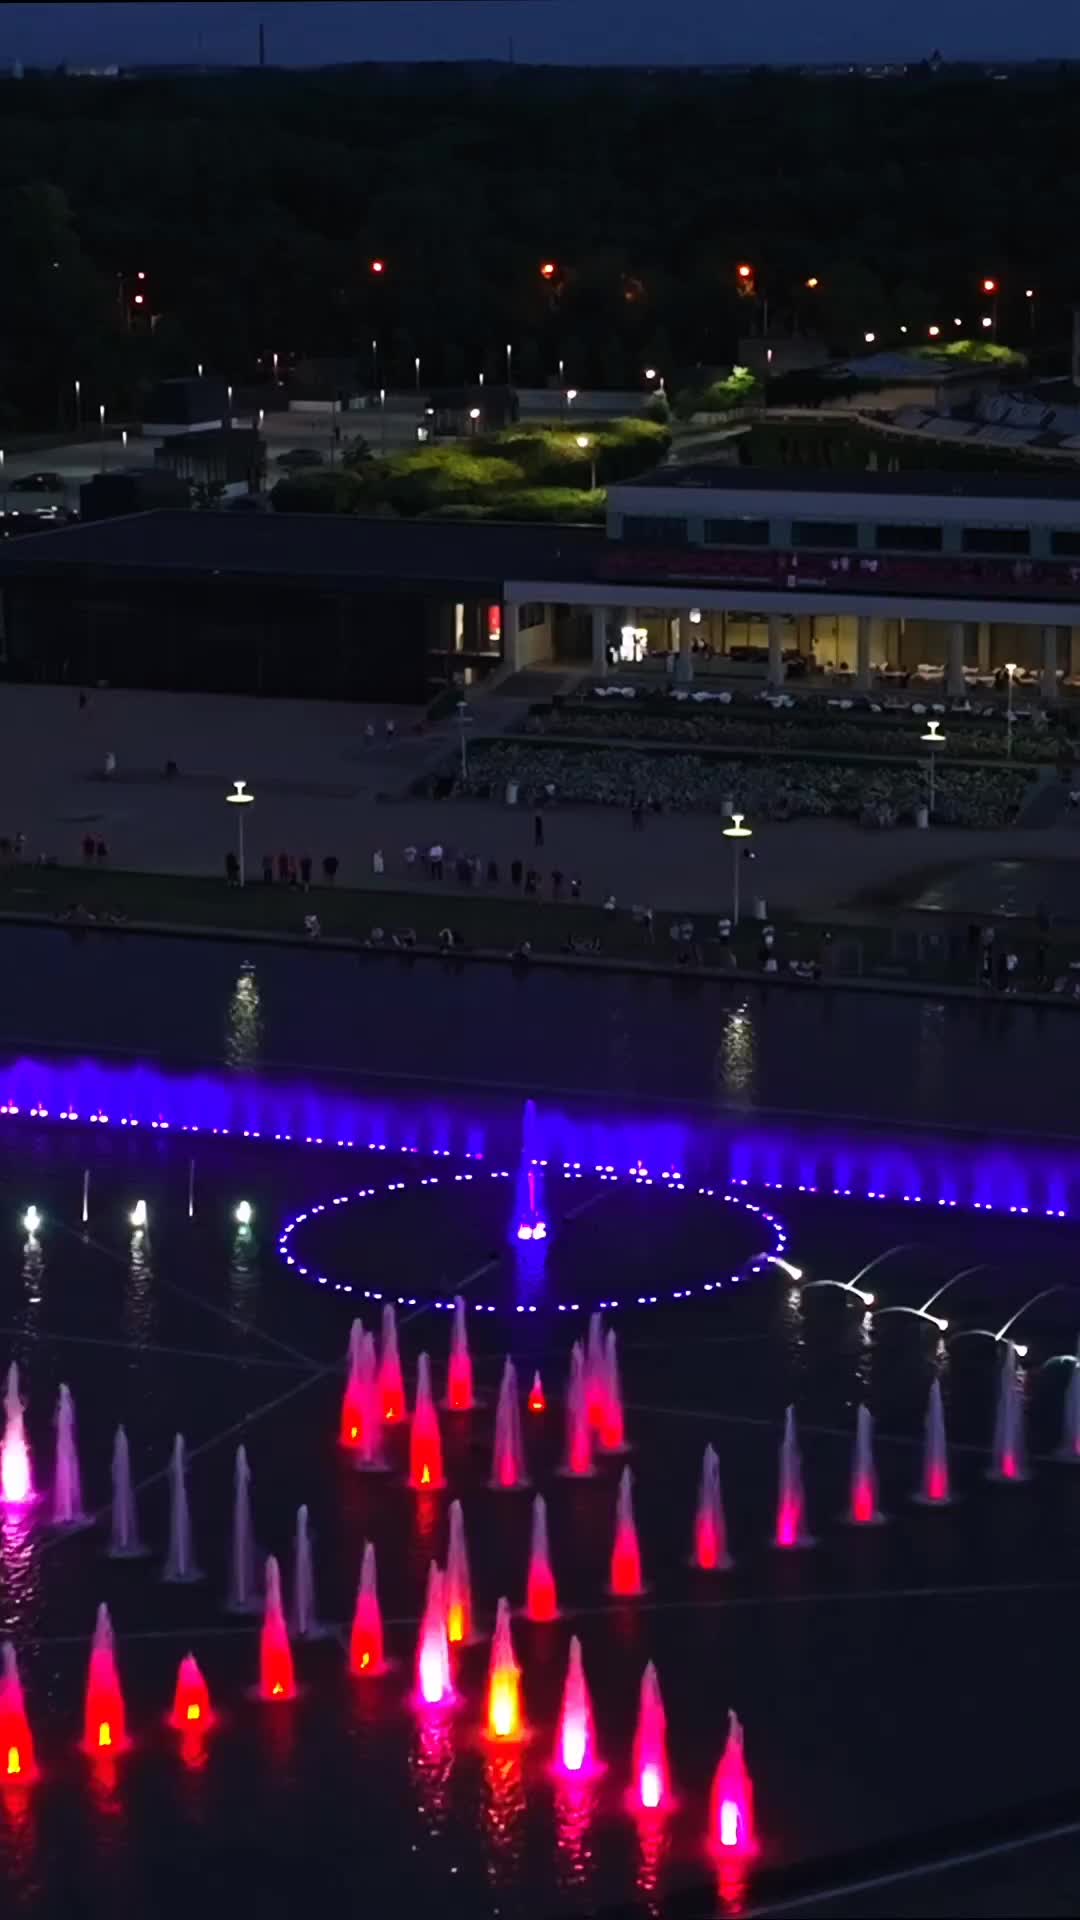 Illuminated Night Fountain Show at Hala Stulecia